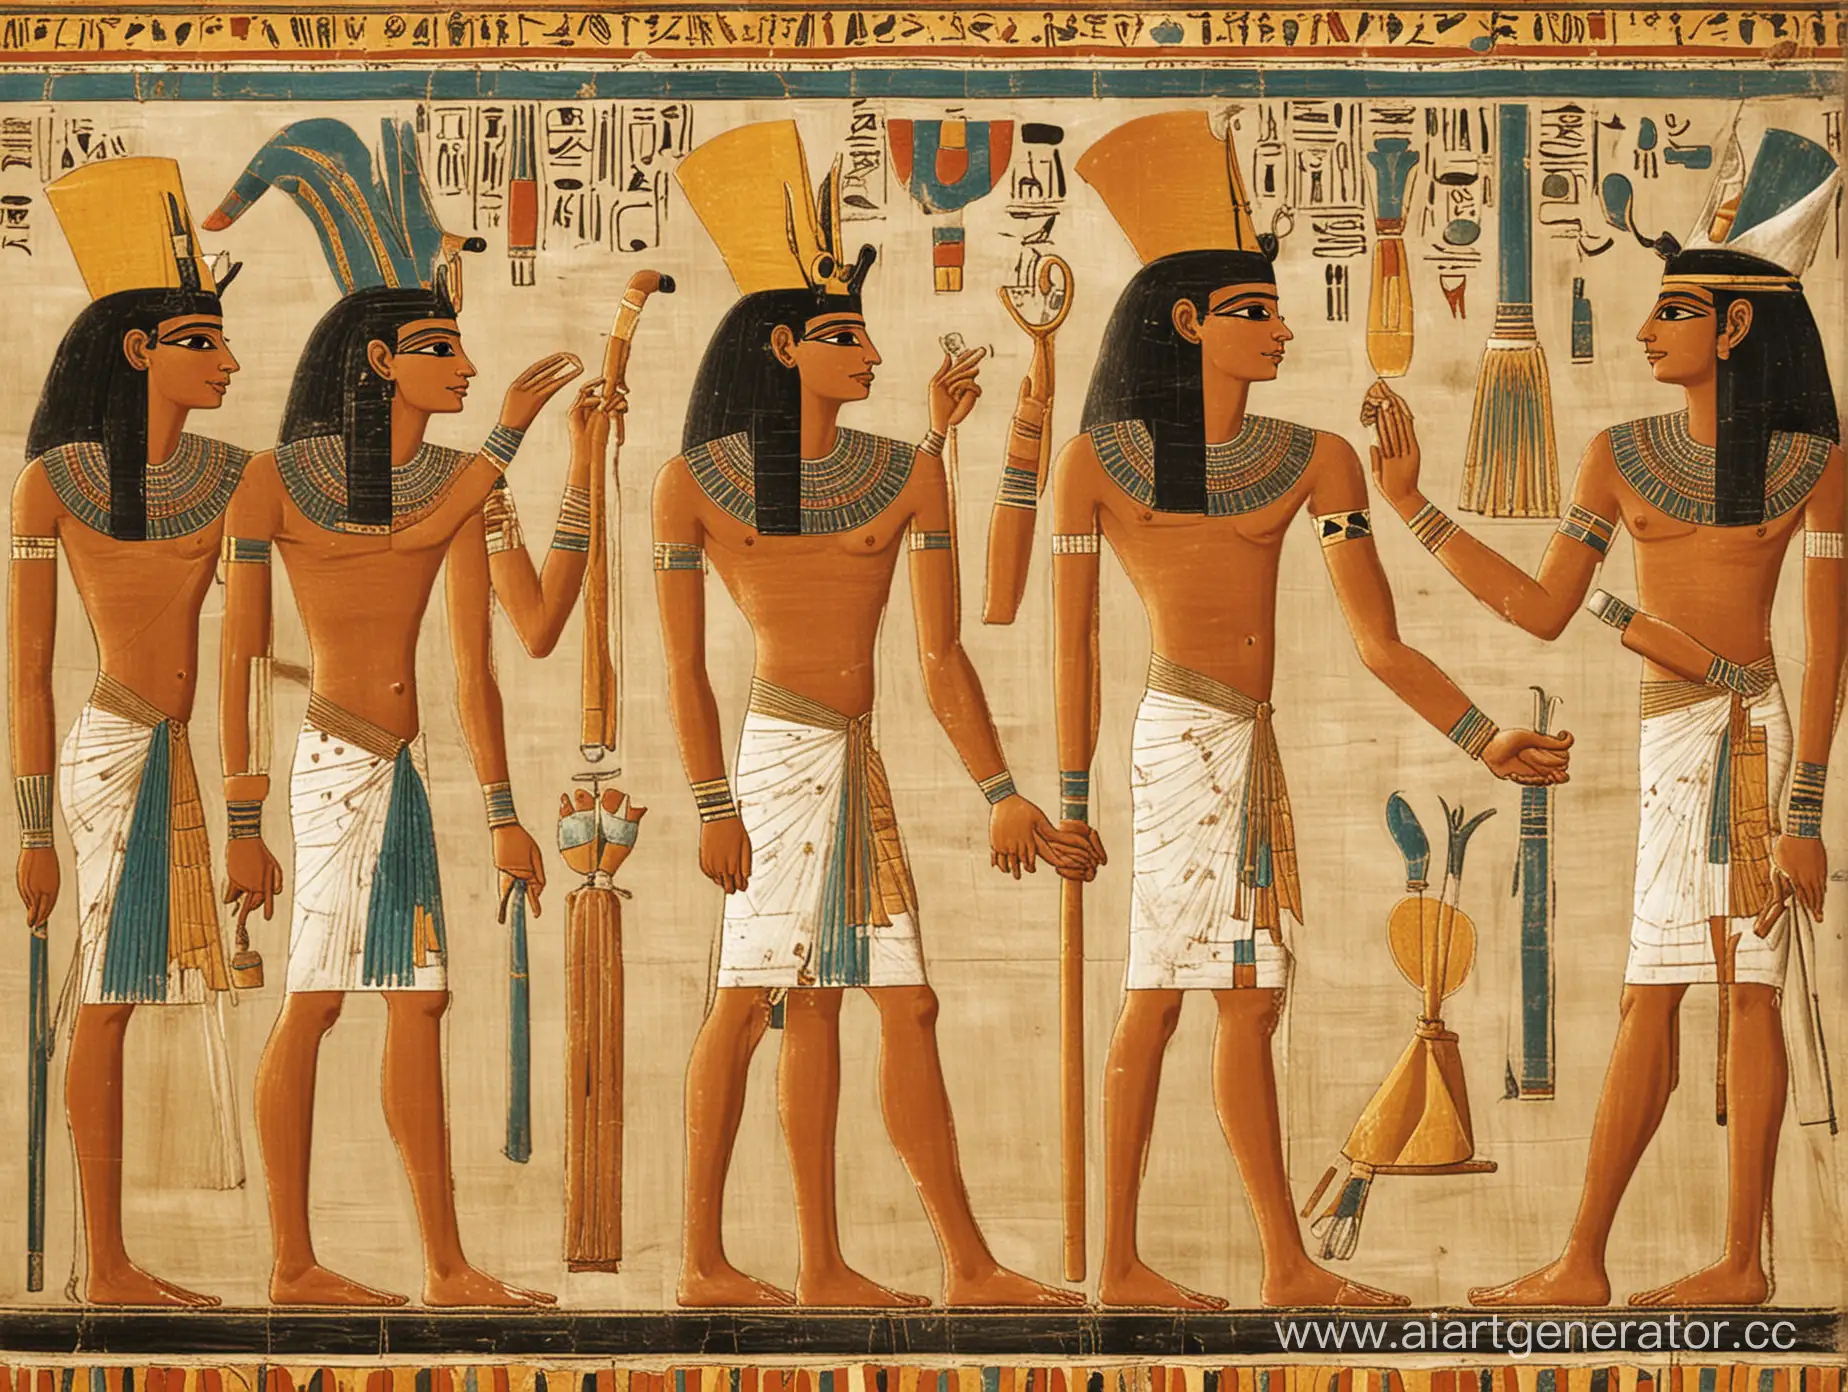 фараон древнего египта устроил пир